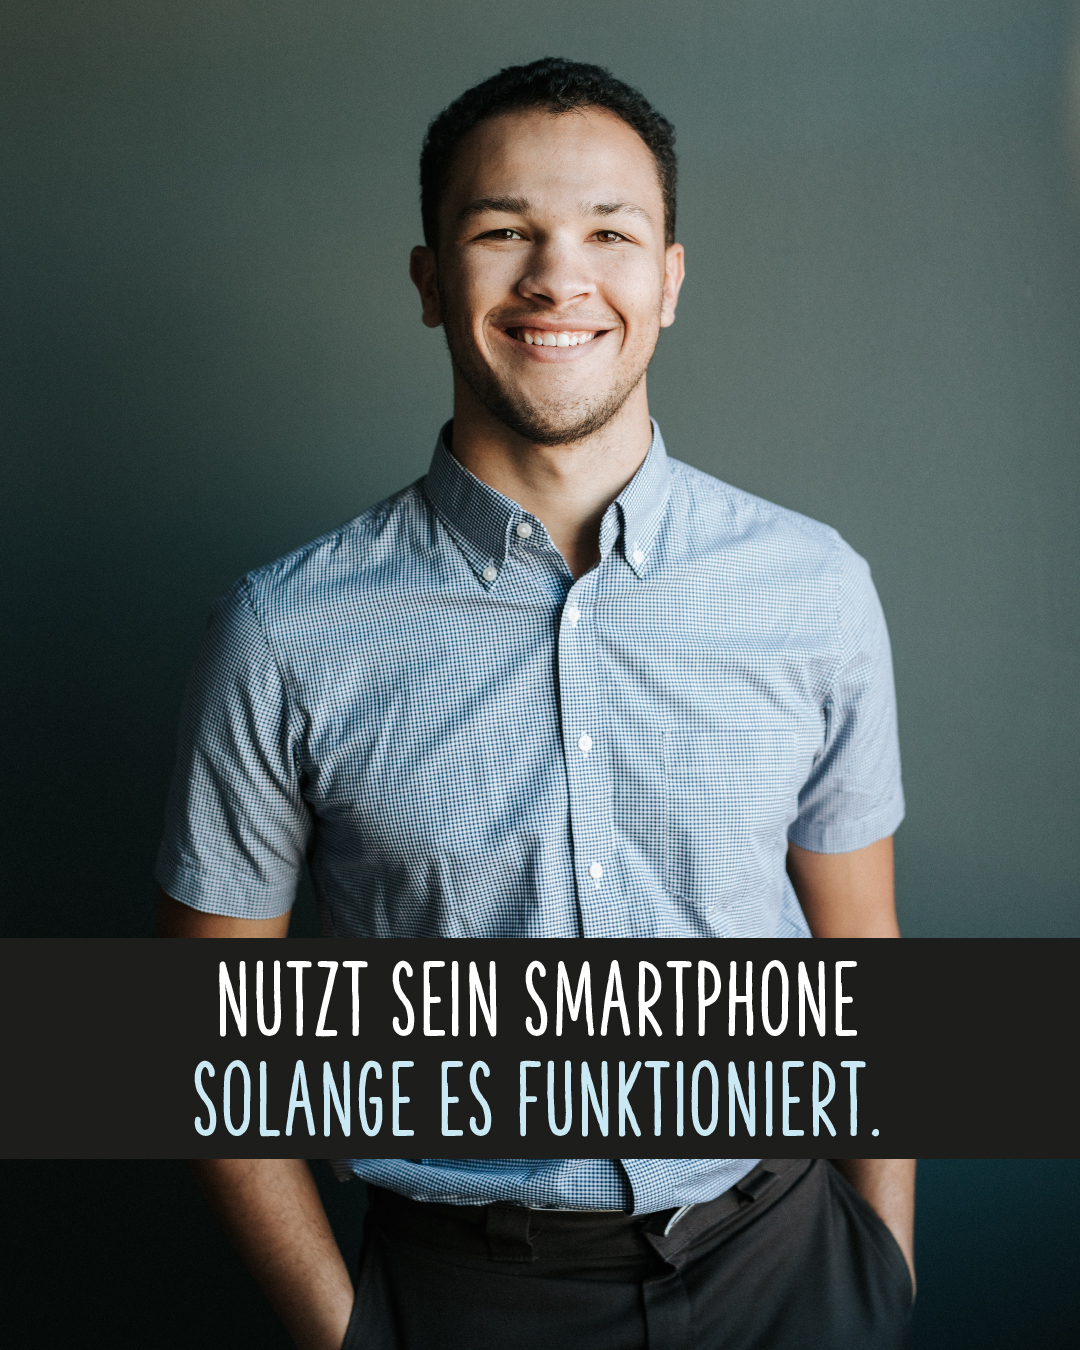 Lächelnder Mann im Business-Outfit .Text darunter: Nutzt sein Smartphone solange es funktioniert.